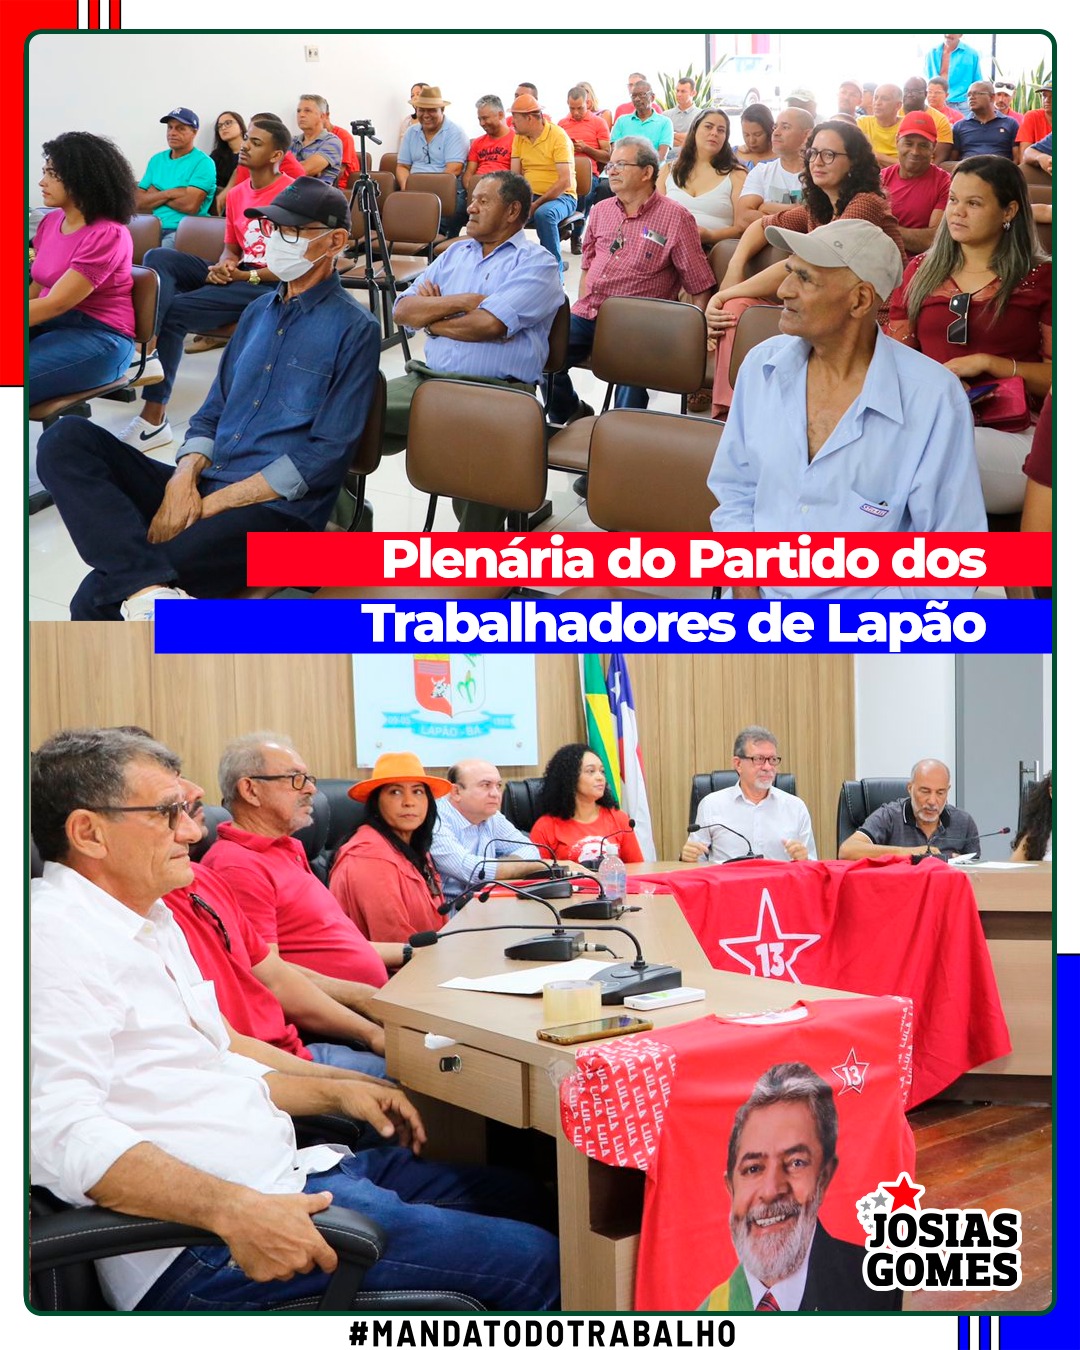 Encerramos Uma Série De 300 Plenárias Na Bahia No Município De Lapão. Viva O Partido Dos Trabalhadores!